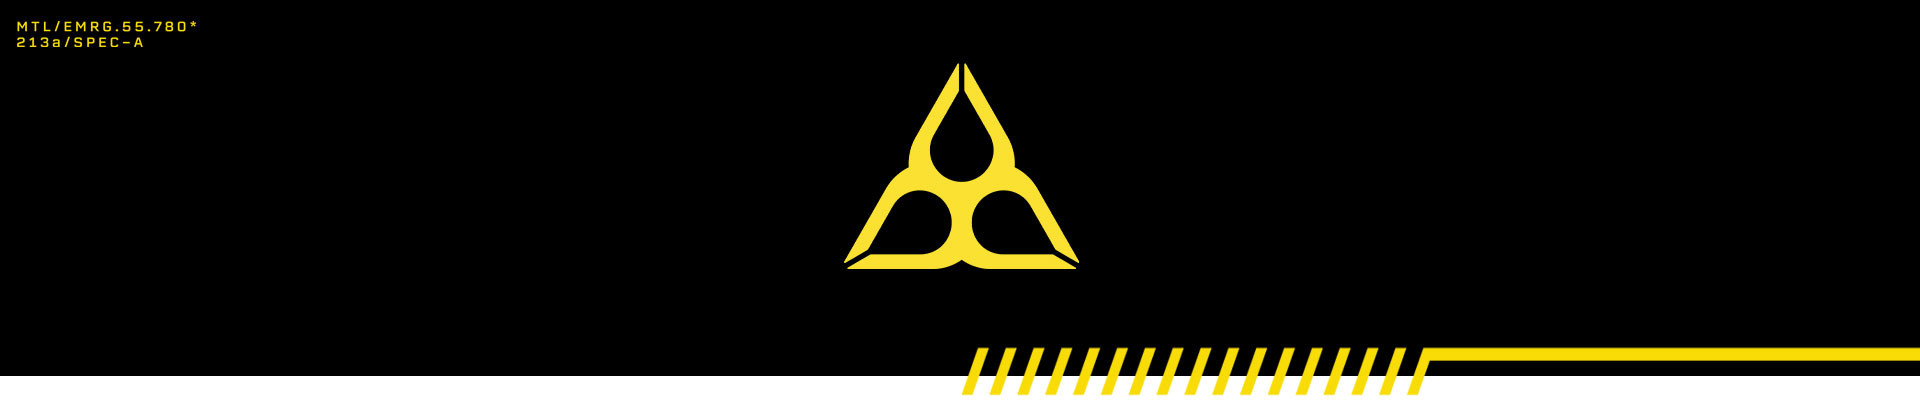 Informações exibidas por um computador na cor laranja, com três lágrimas dispostas sobre um símbolo de perigo.